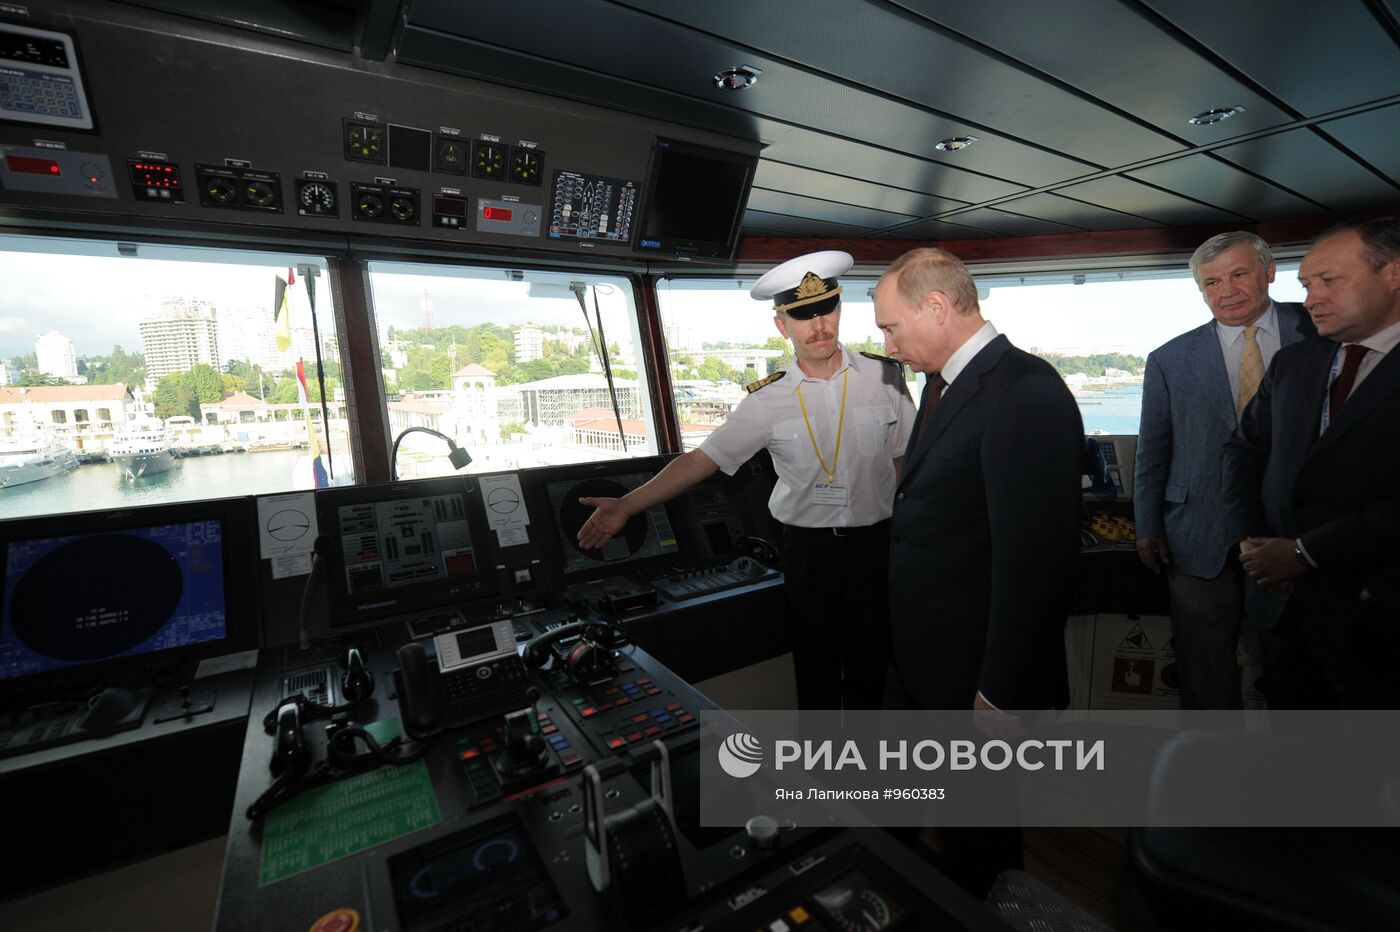 В.Путин принял участие в имянаречении корабля "Вячеслав Тихонов"